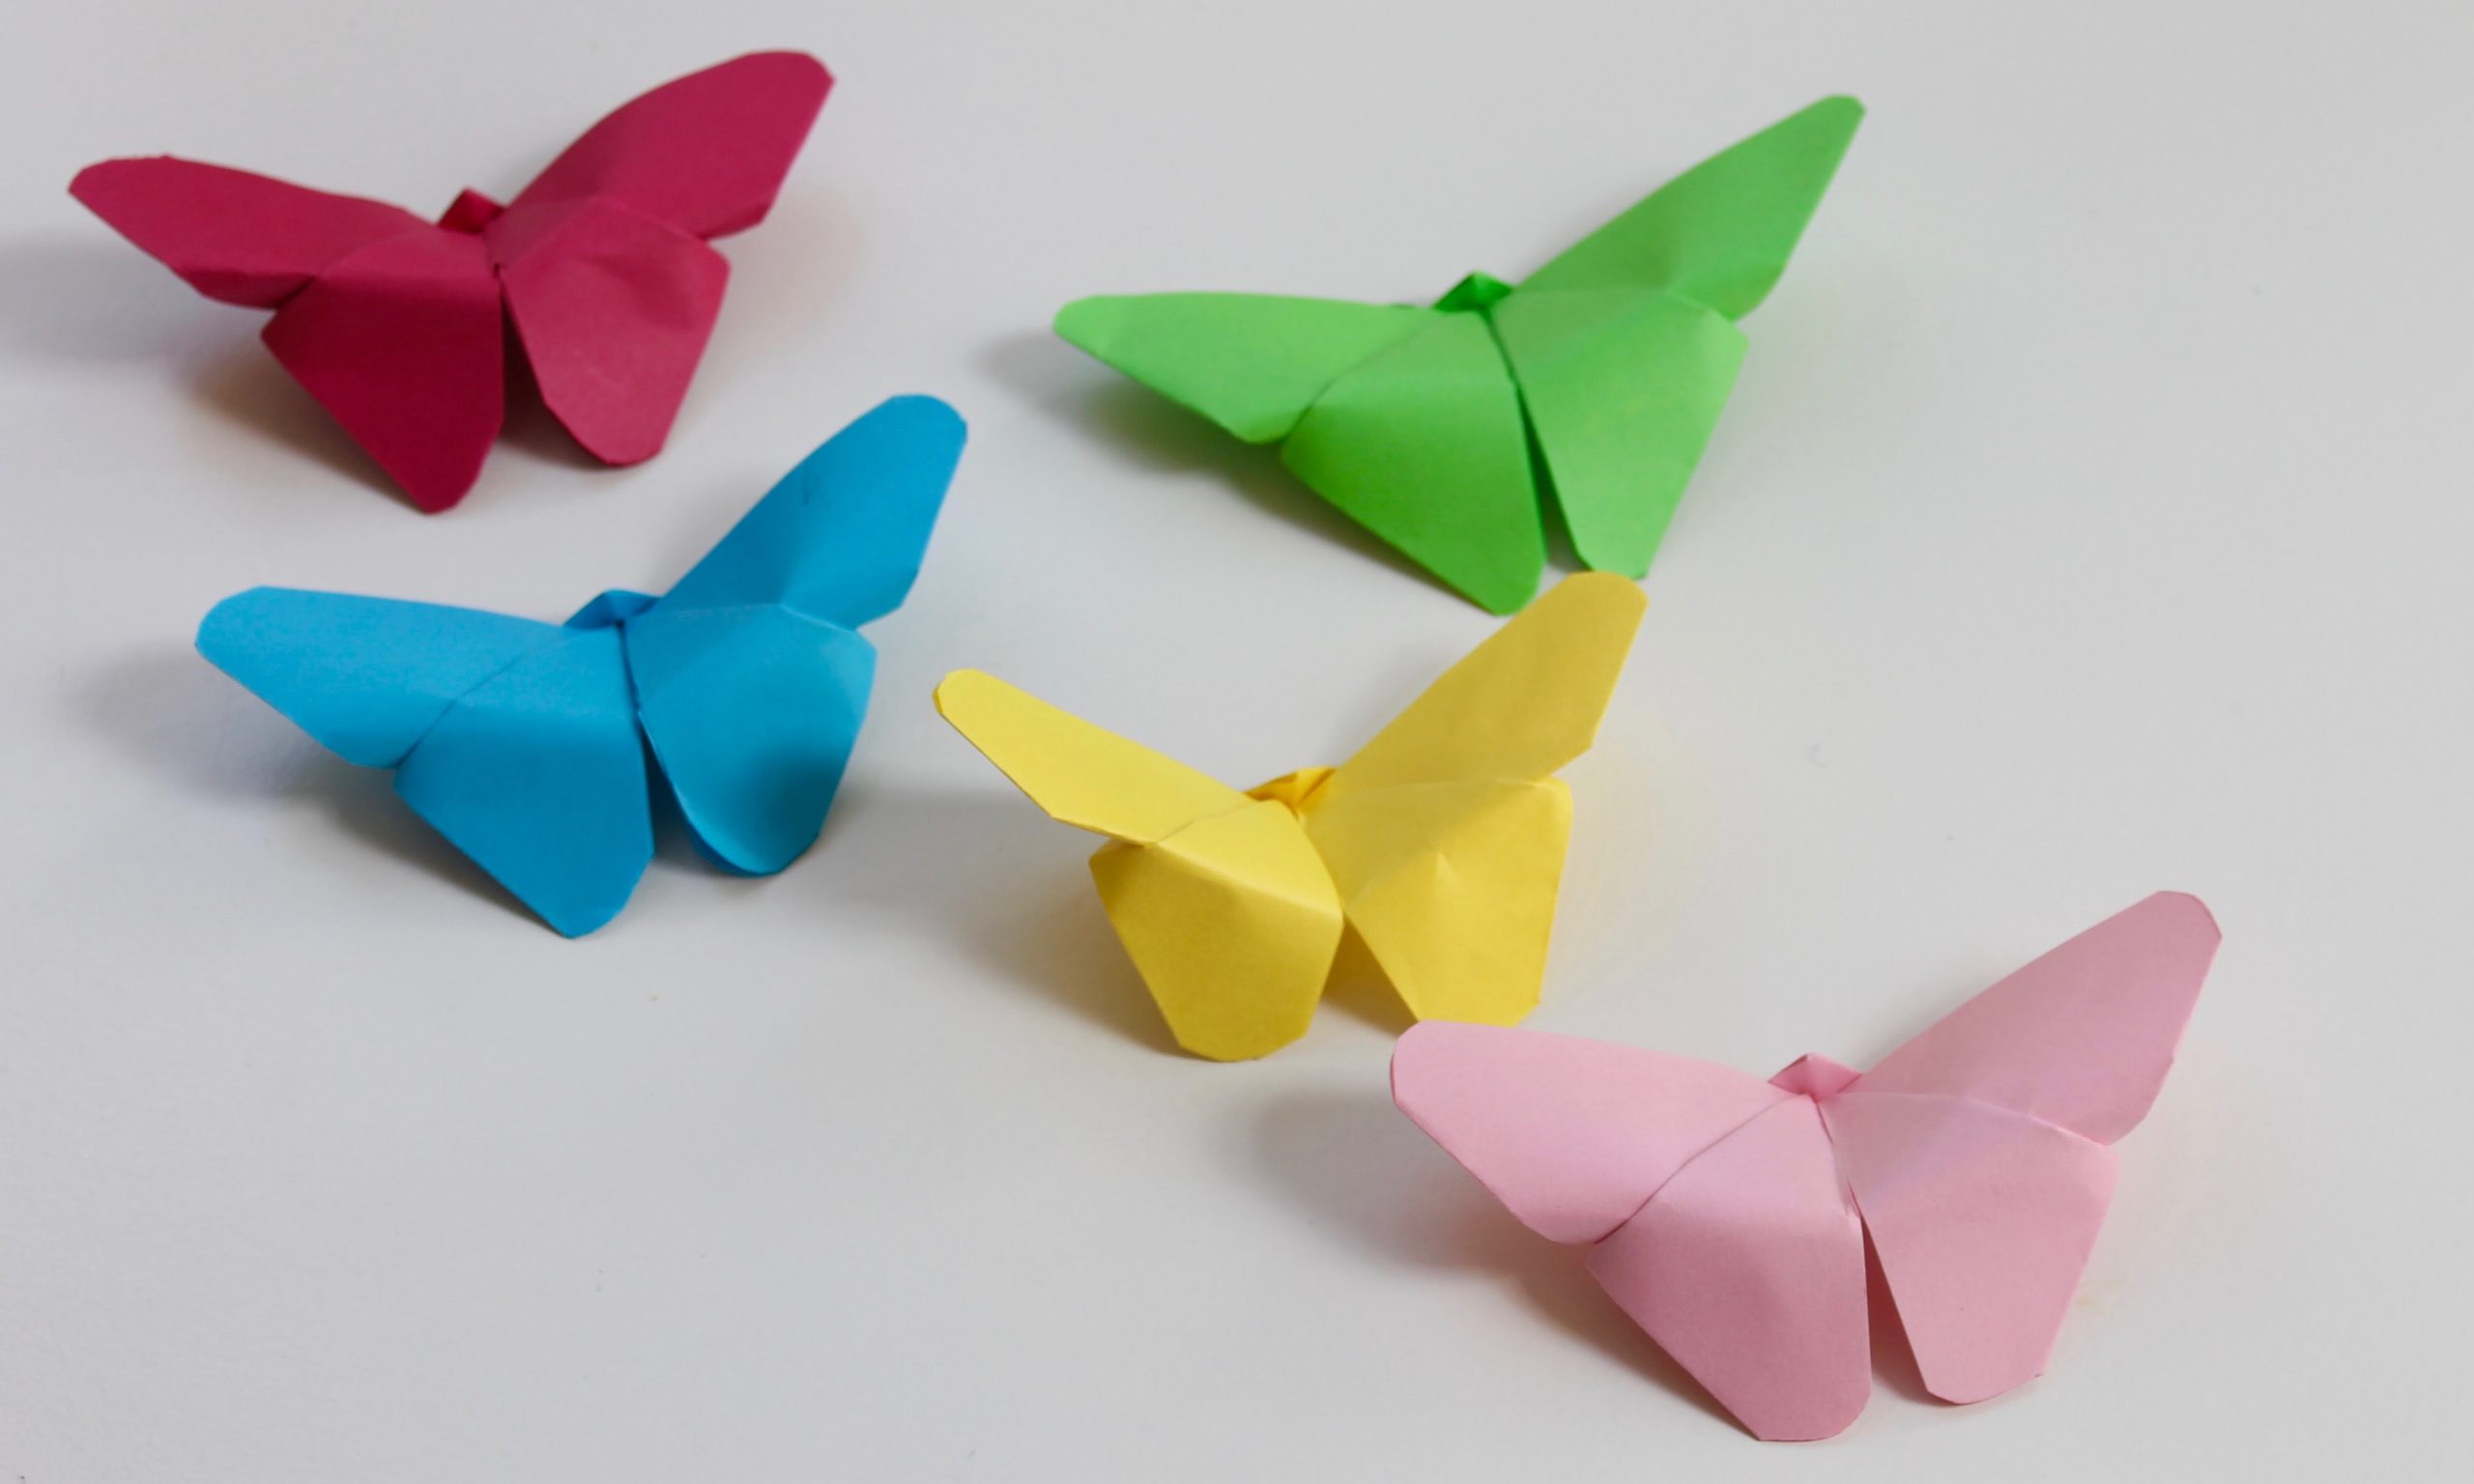 Gấp Origami bướm là một hoạt động giải trí thú vị và mang tính thư giãn cao. Với những tờ giấy đầy màu sắc và các bước gấp đơn giản, bạn có thể tạo ra một bướm trang trí tuyệt đẹp để làm mới không gian sống của mình. Nhanh chóng truy cập và khám phá ngay hình ảnh liên quan đến từ khóa này để bắt đầu gấp những chiếc bướm tuyệt vời của riêng bạn!